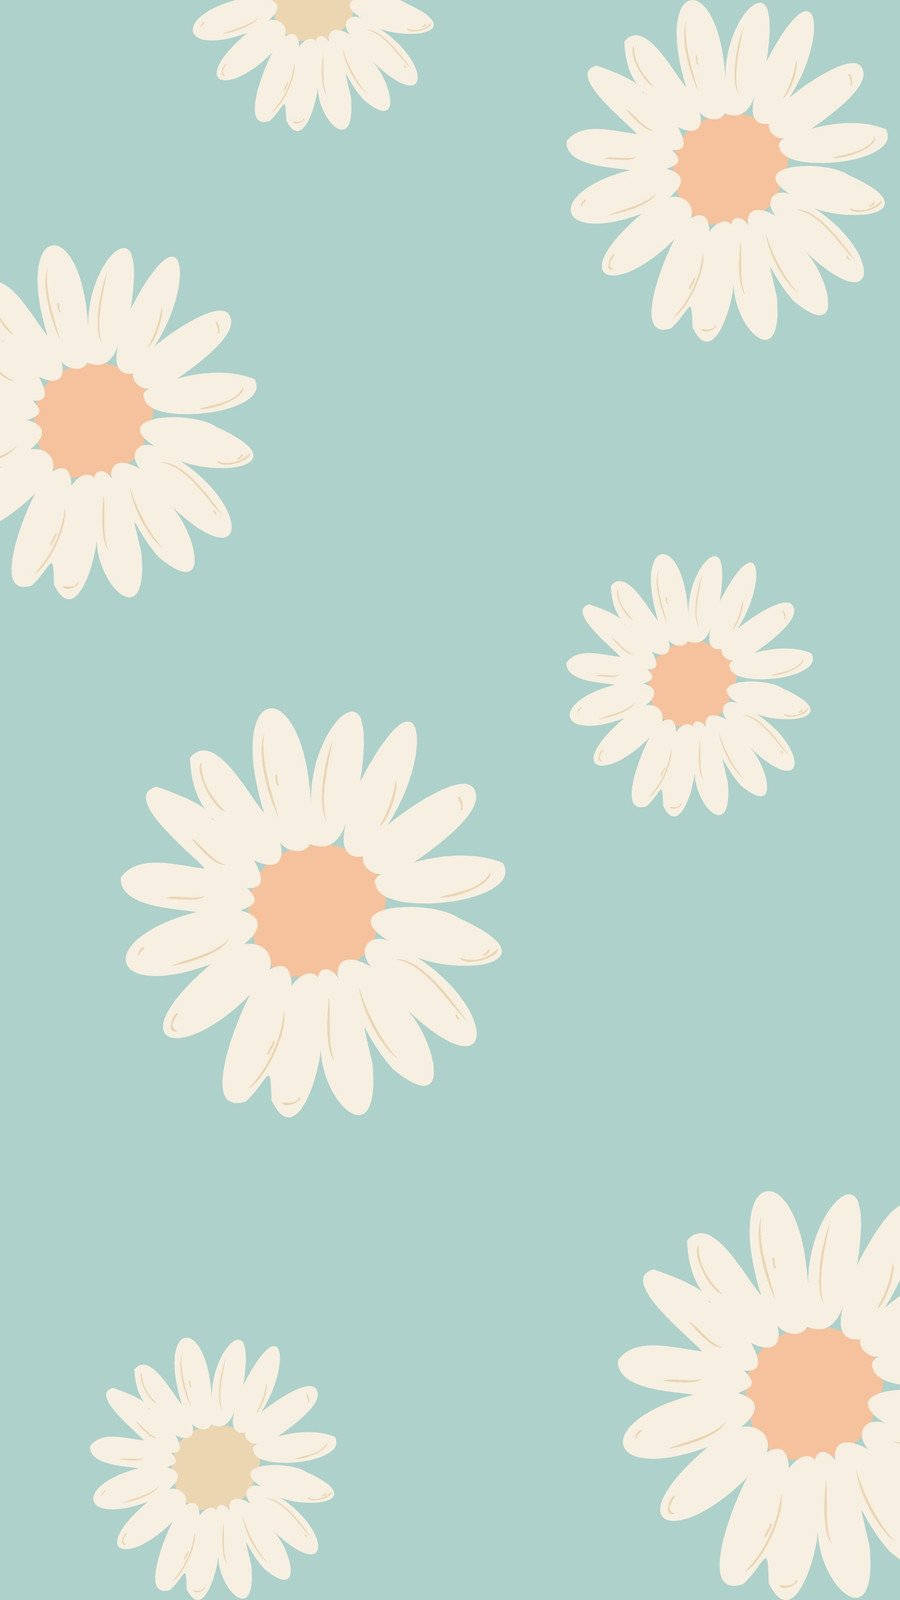 Pastel floral background wallpaper  Stock Illustration 64584386  PIXTA